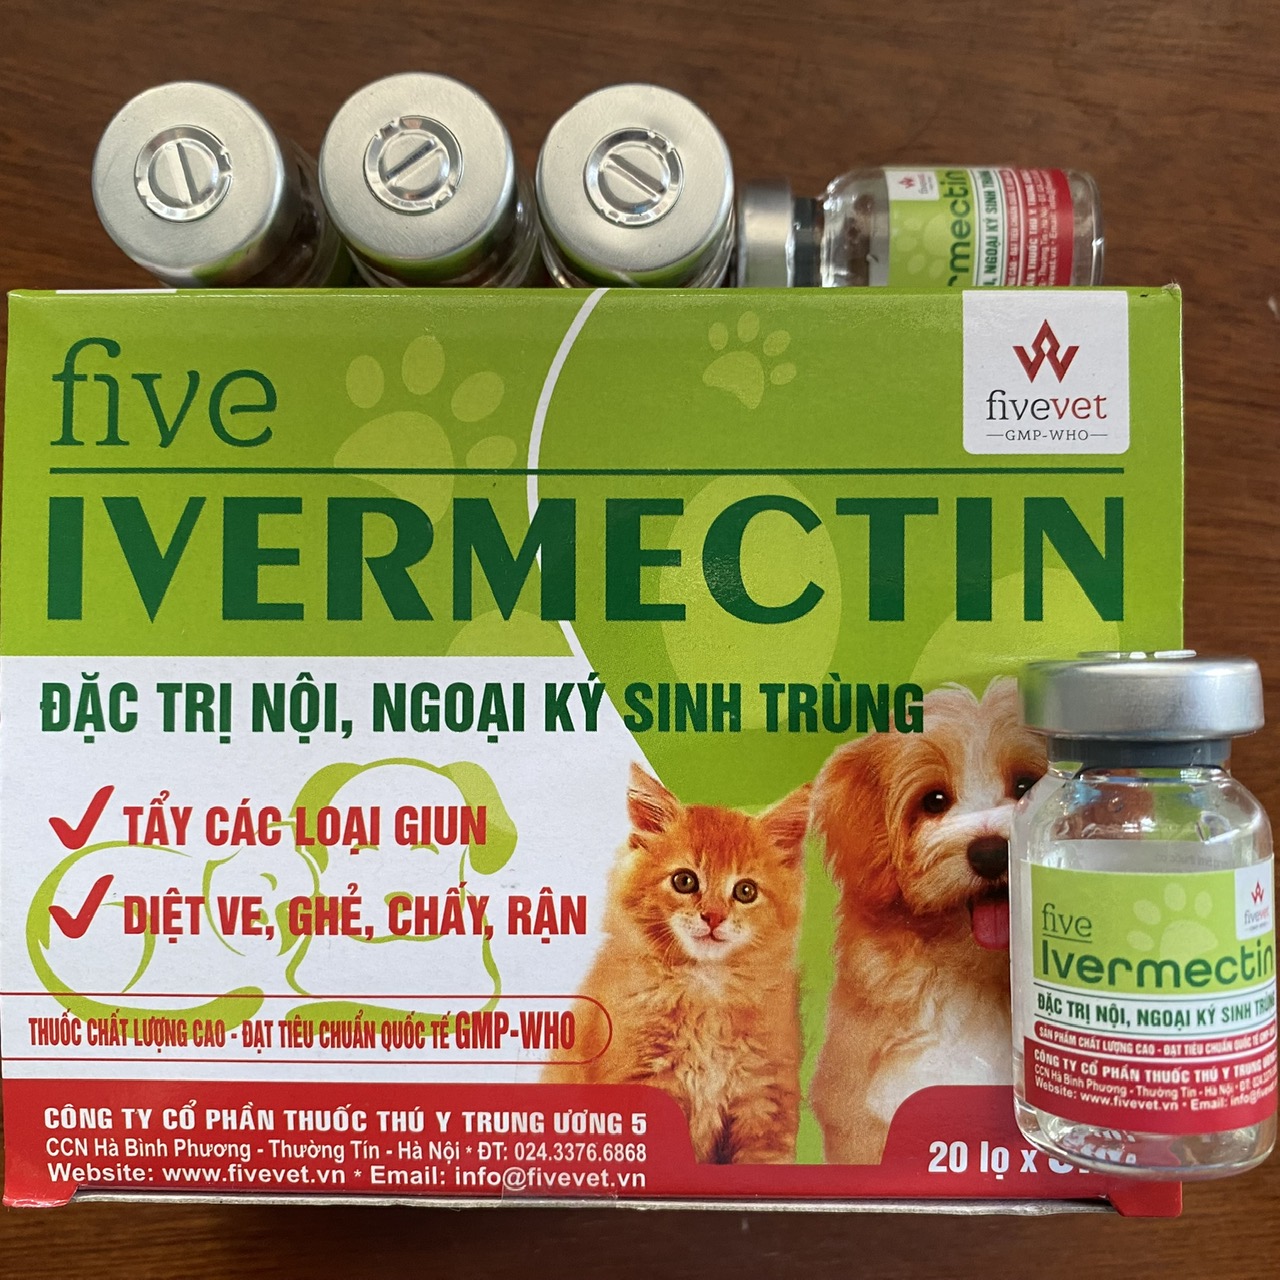 Five- Ivermectin 5ml trị nội ngoại kí sinh trùng cho chó mèo.